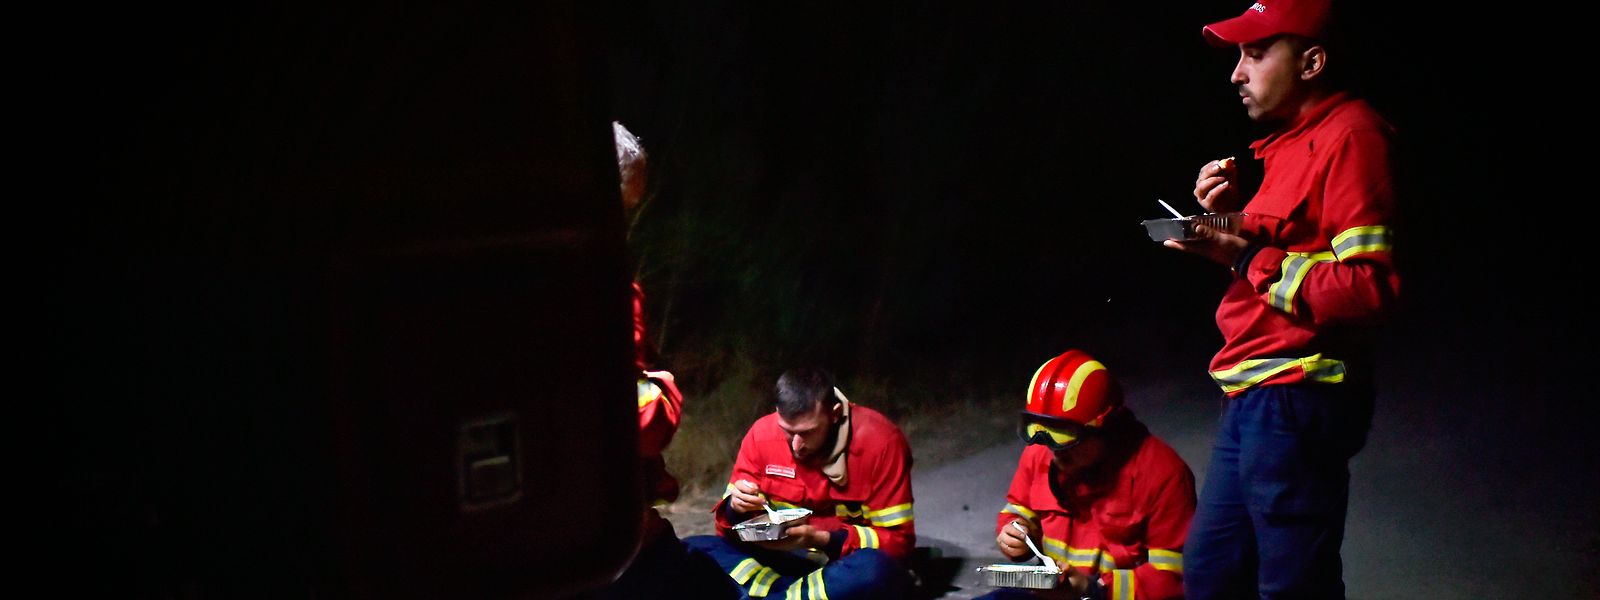 Momento de pausa de um grupo de bombeiros que combateram o incêndio na Serra da Estrela em Folgosinho, Gouveia durante a madrugada de sexta-feira.